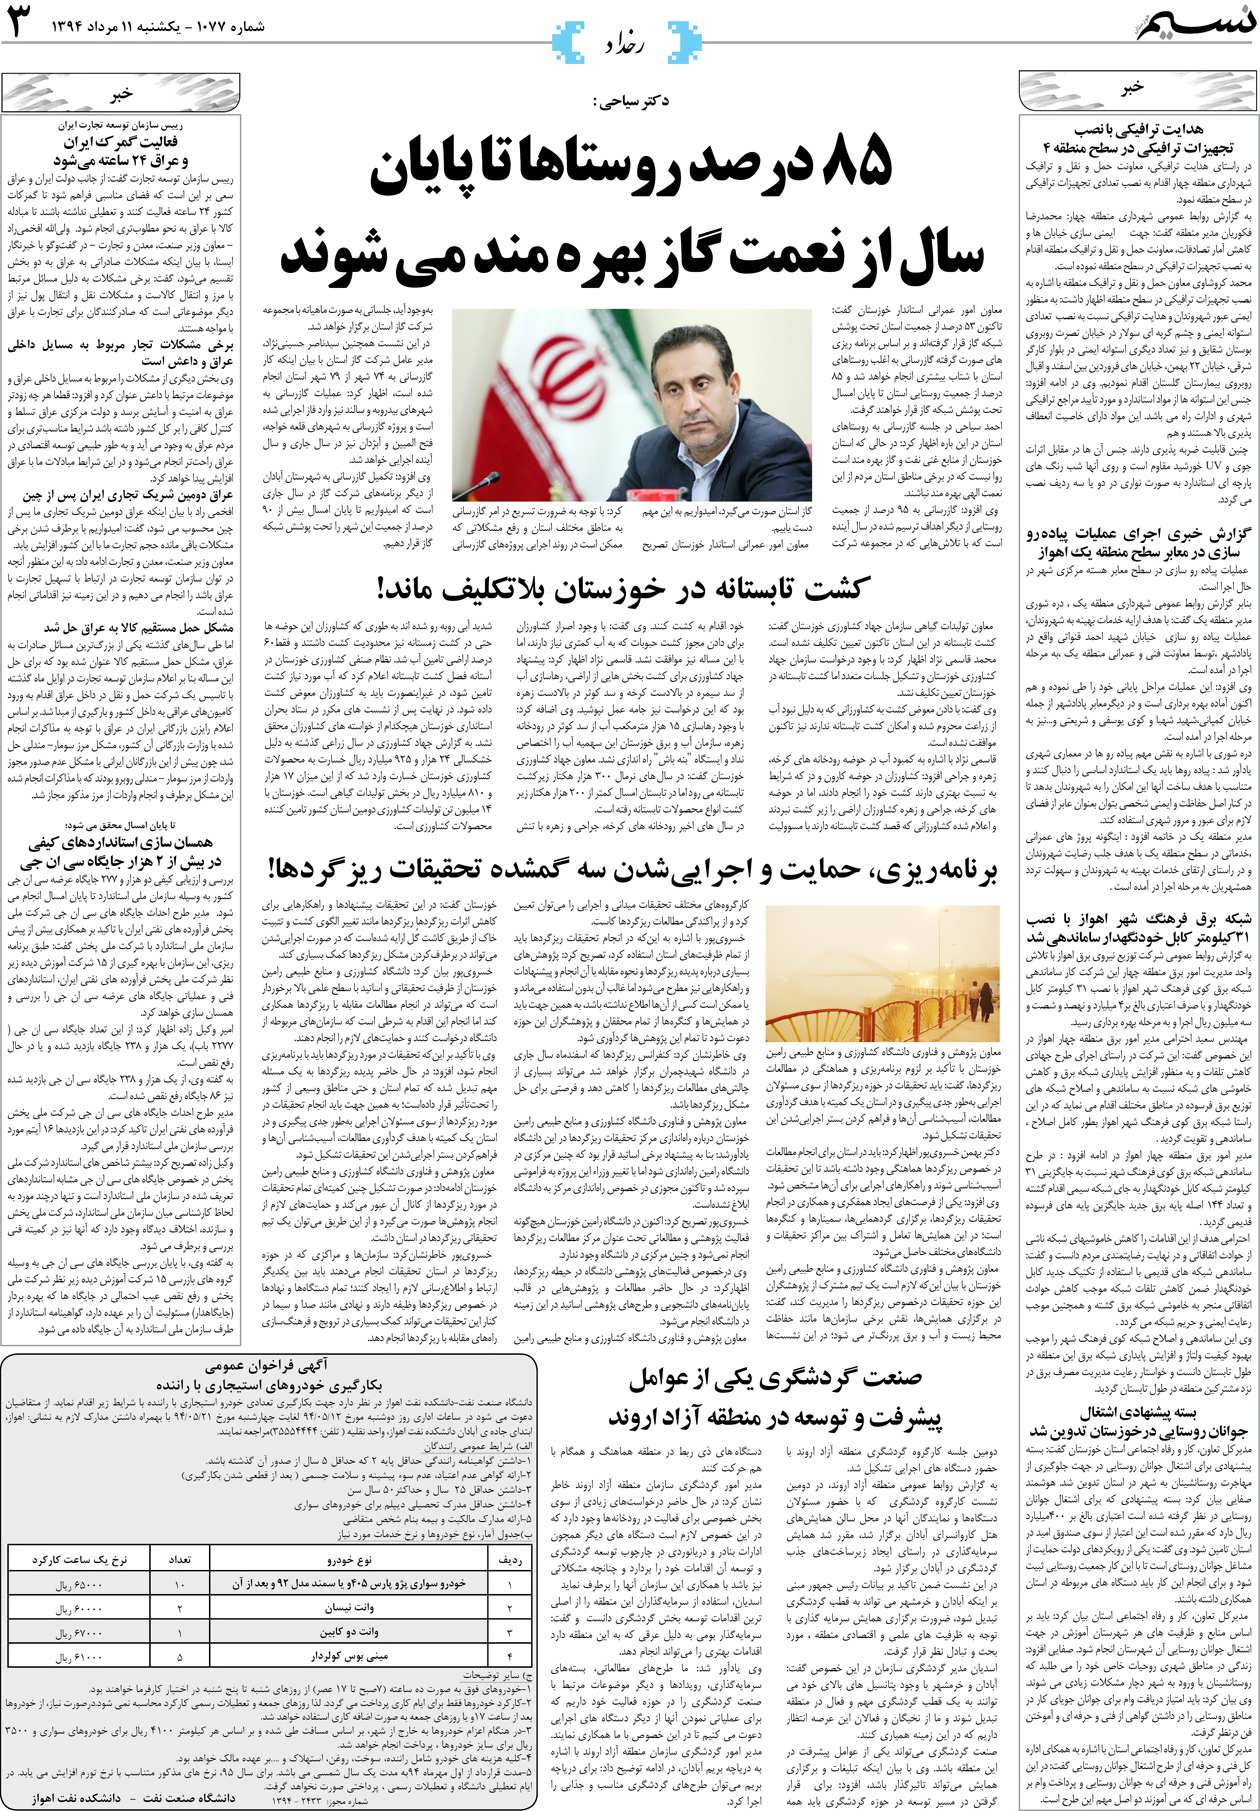 صفحه رخداد روزنامه نسیم شماره 1077